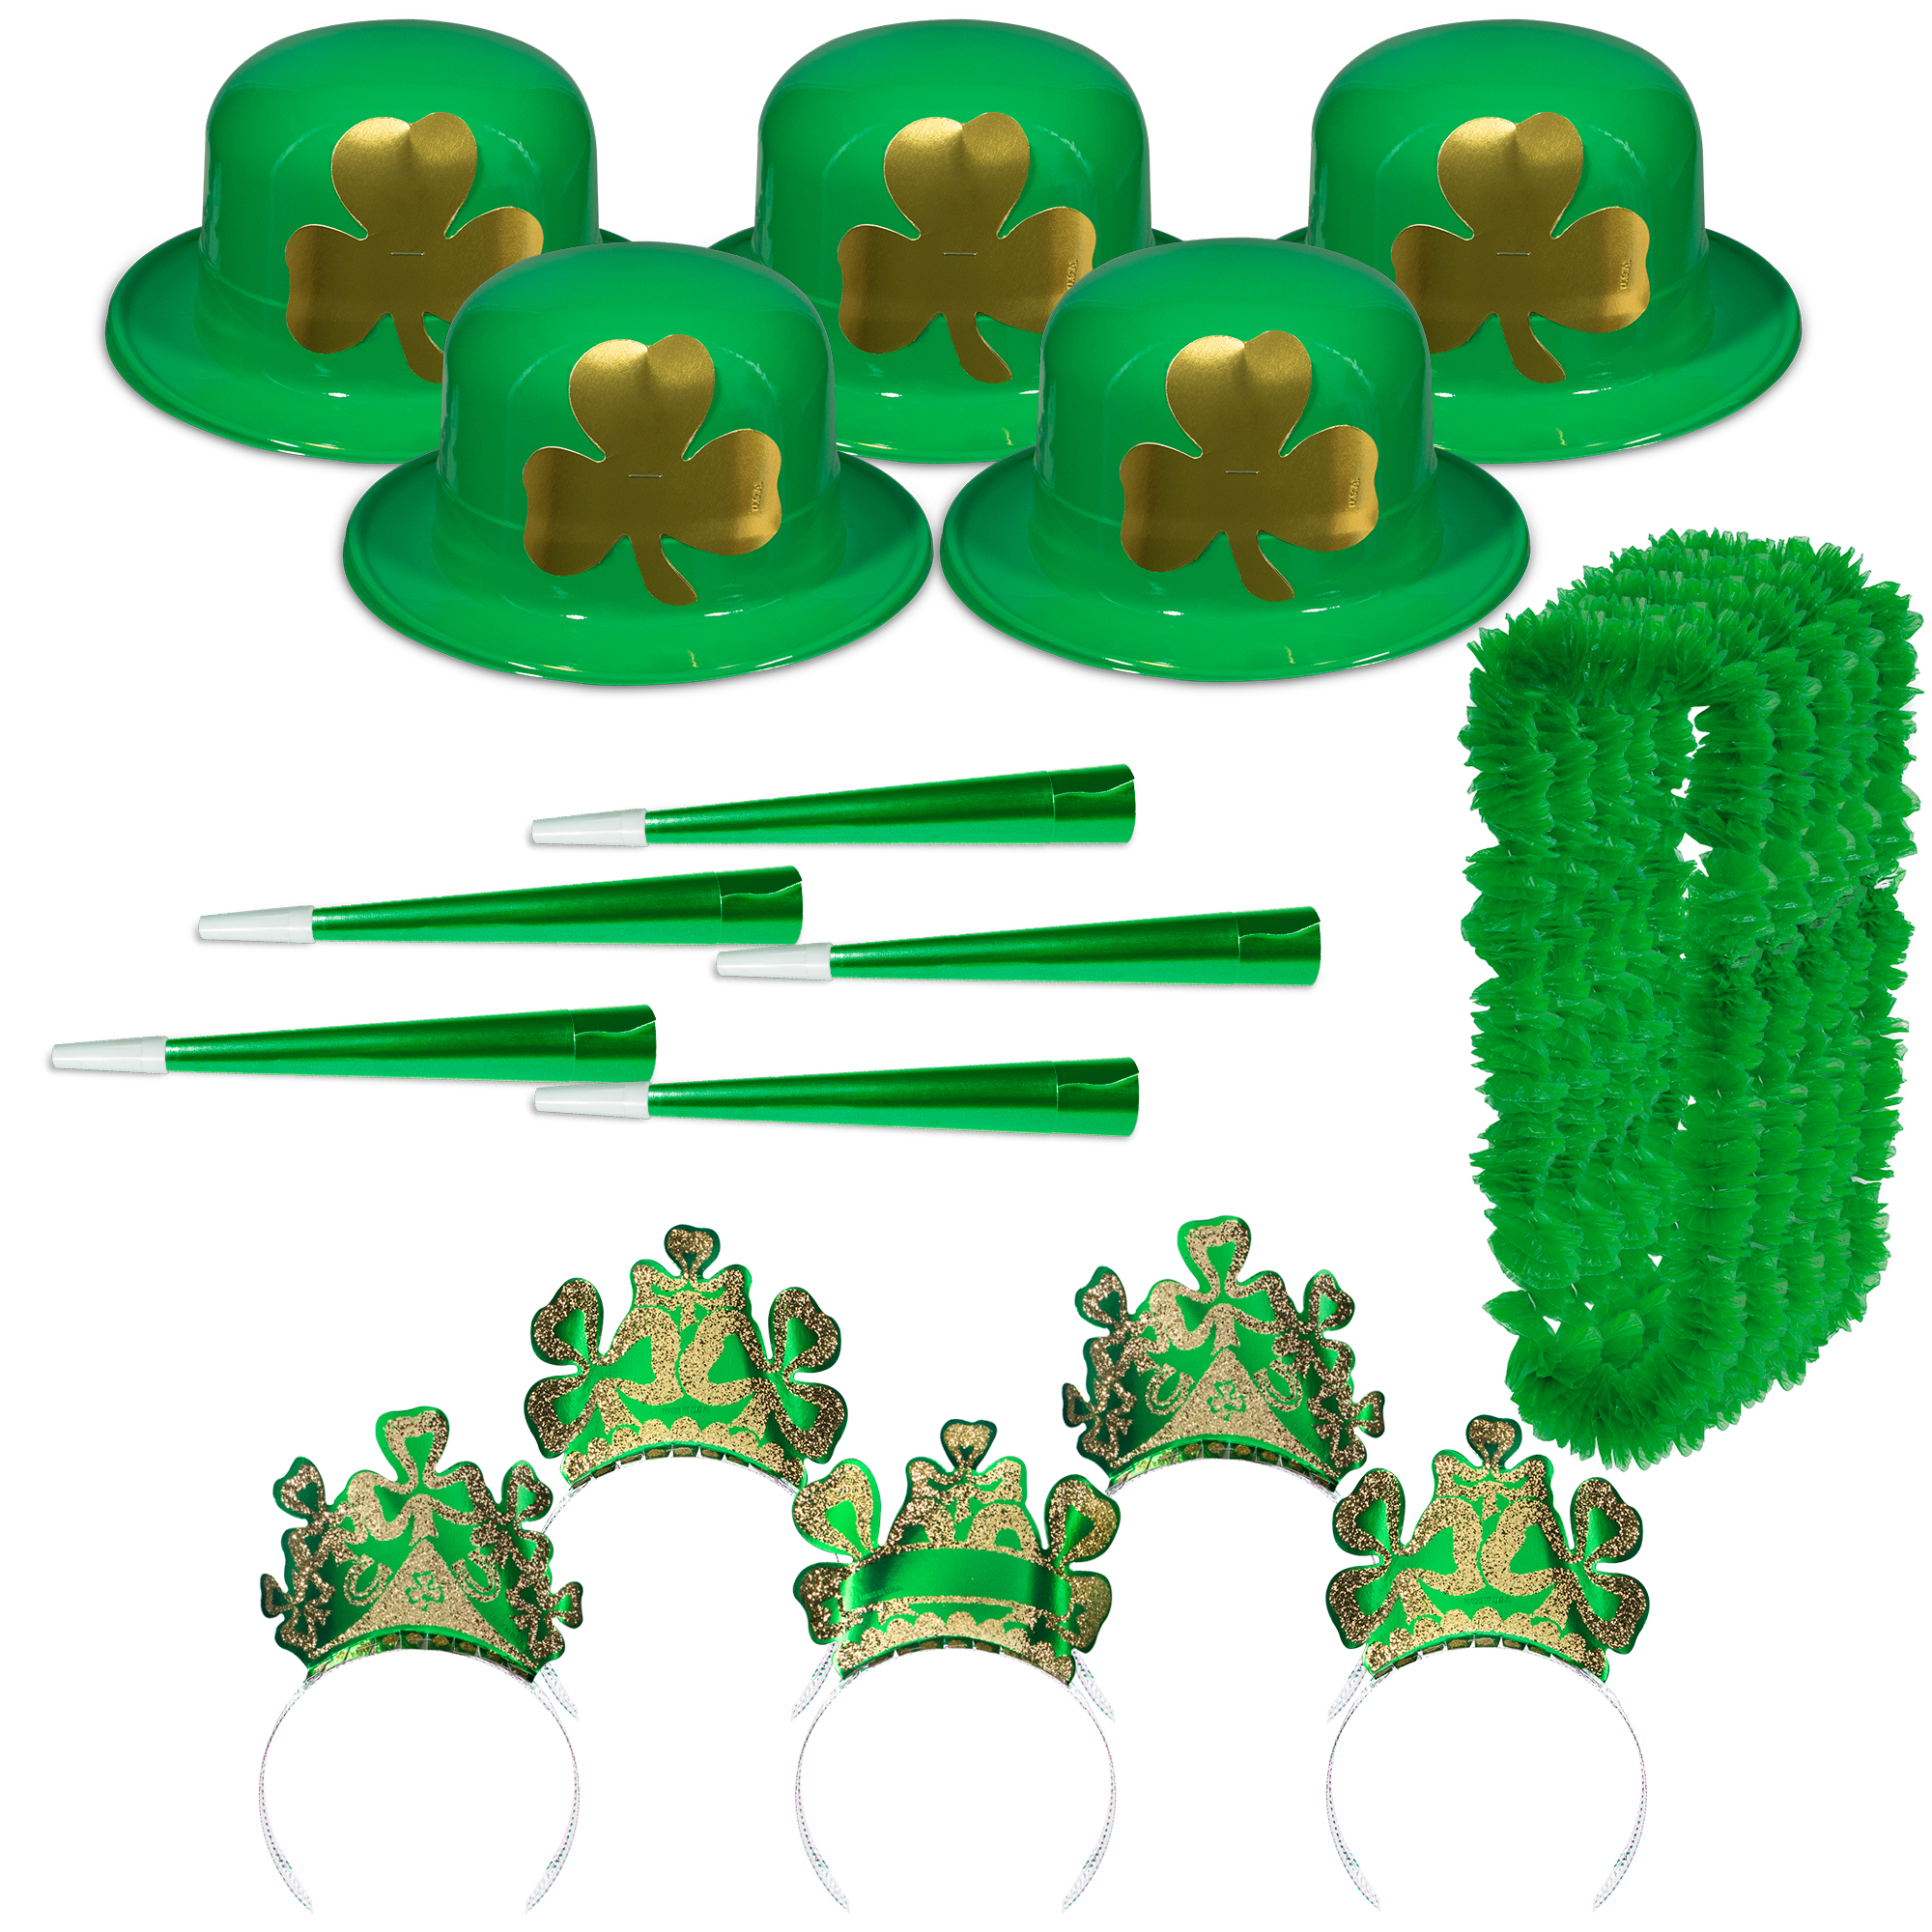 St. Patrick's Day Party Kit for 50 by Windy City Novelties